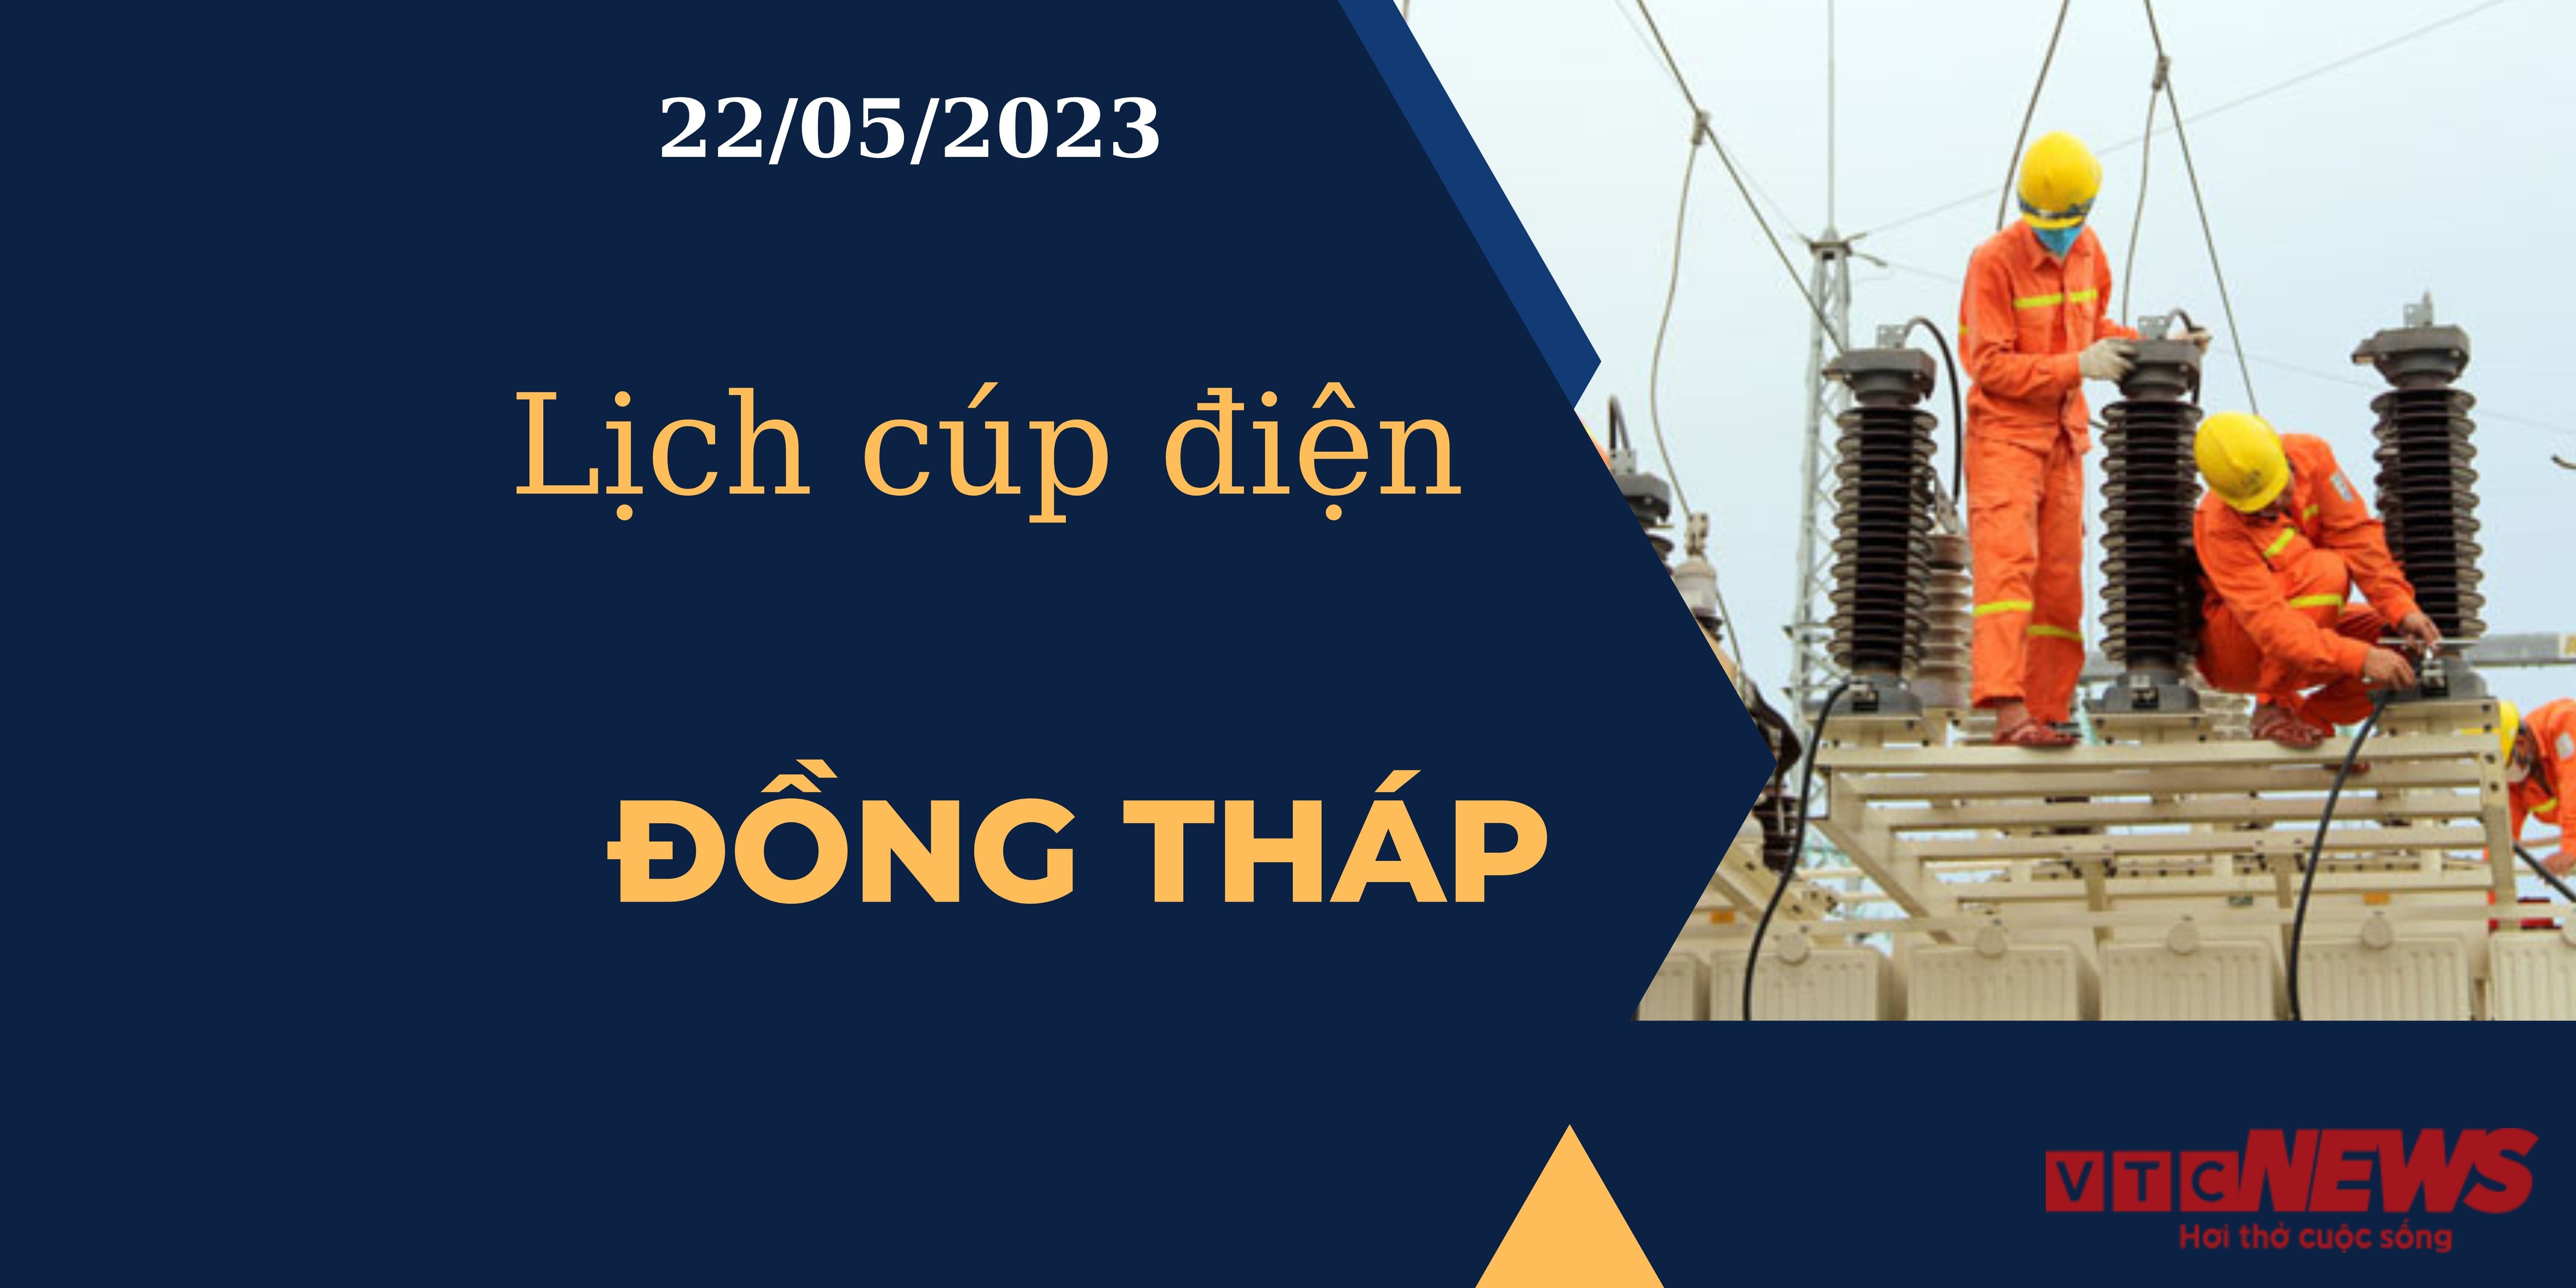 Lịch cúp điện hôm nay ngày 22/05/2023 tại Đồng Tháp - 1